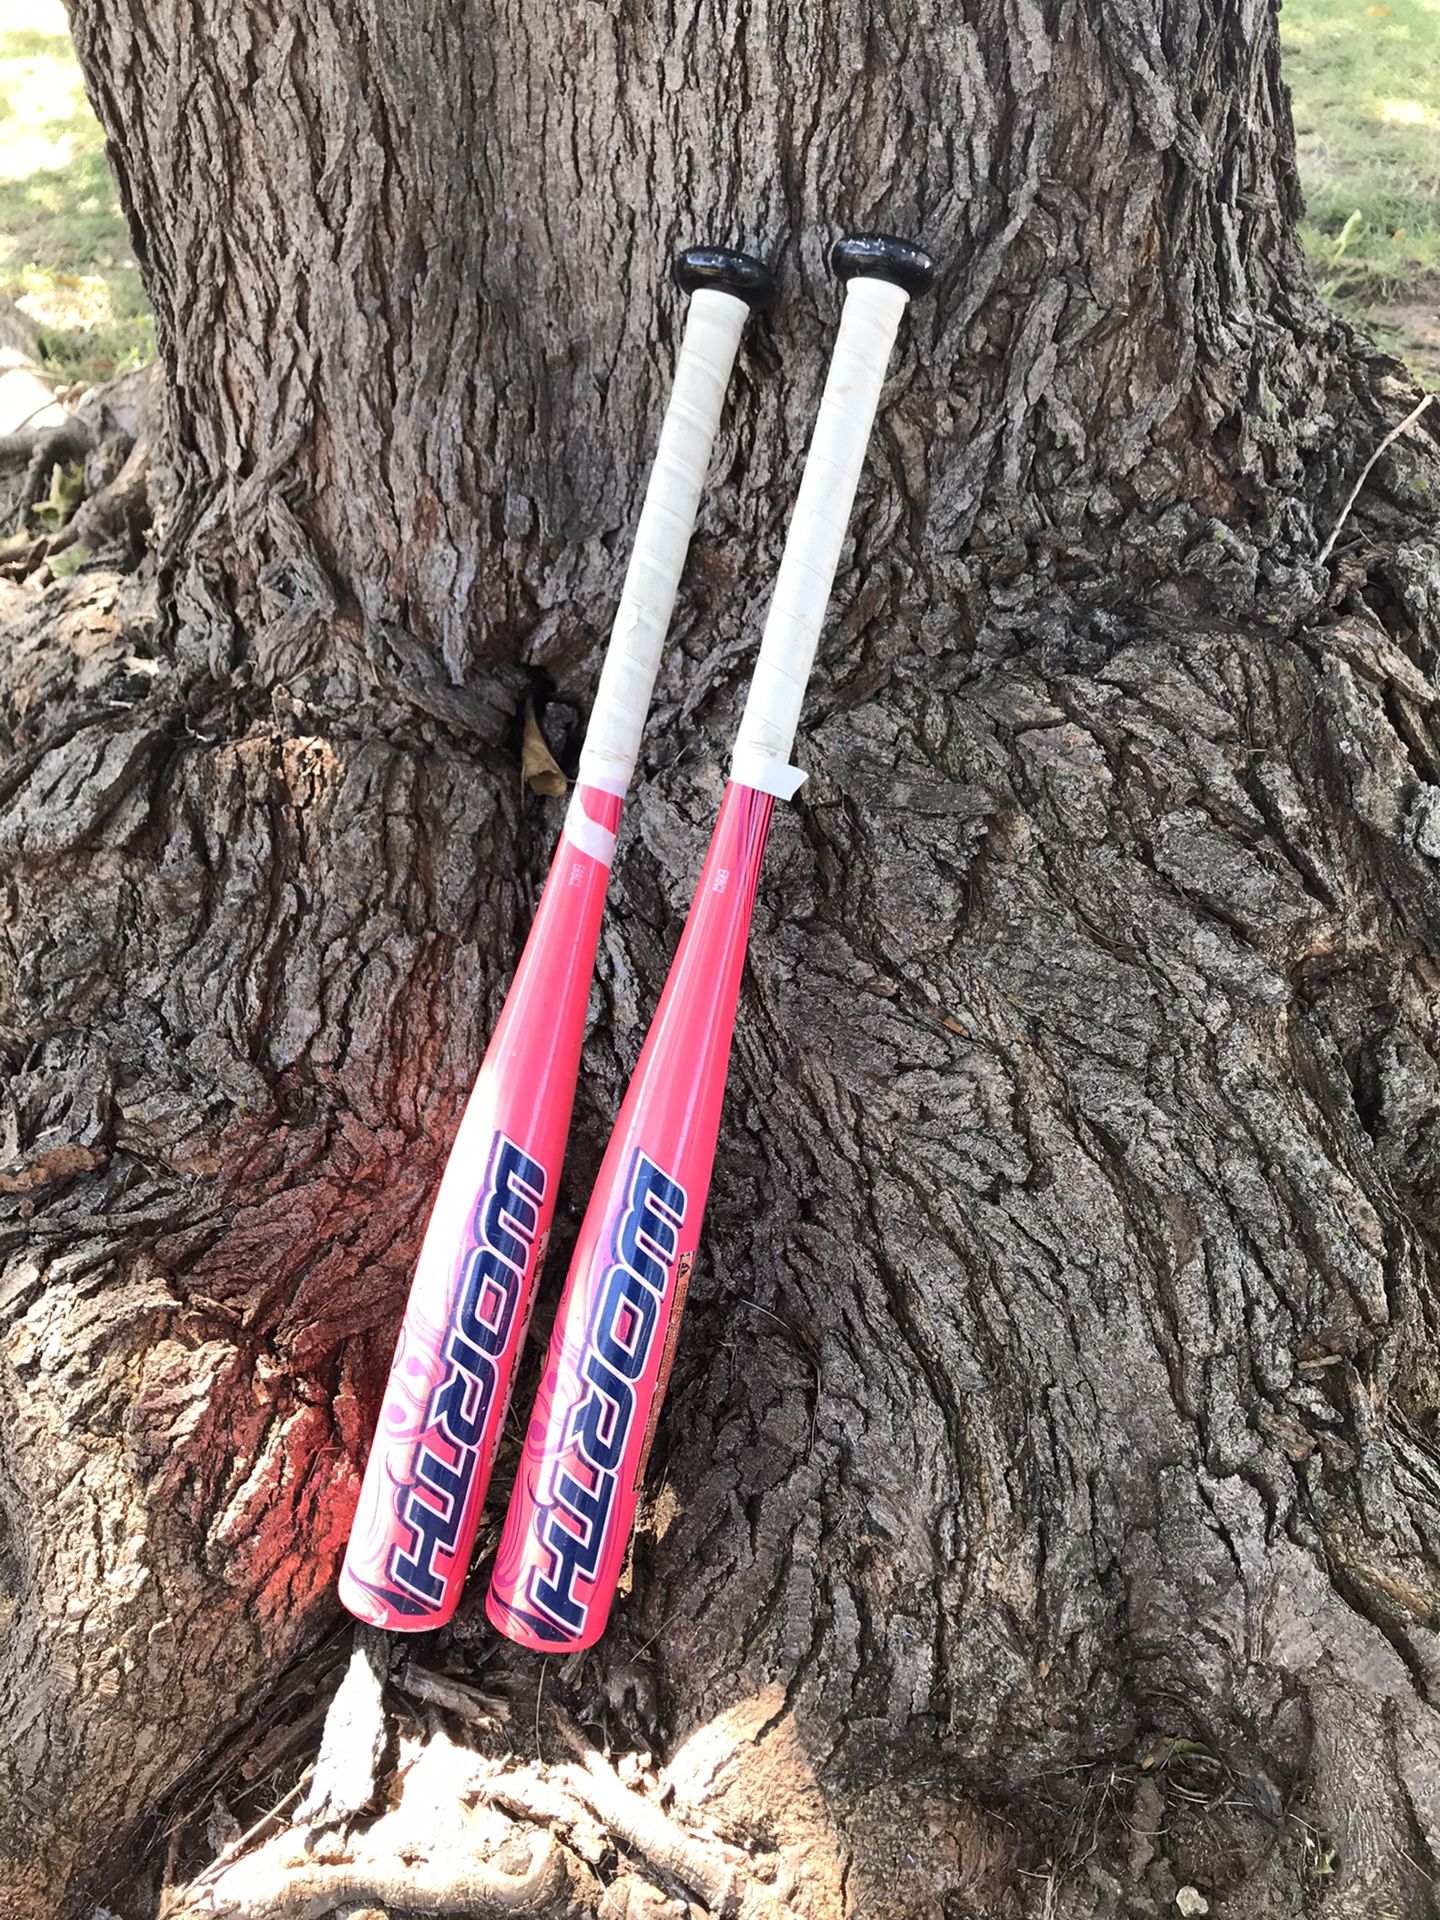 Girls baseball bats